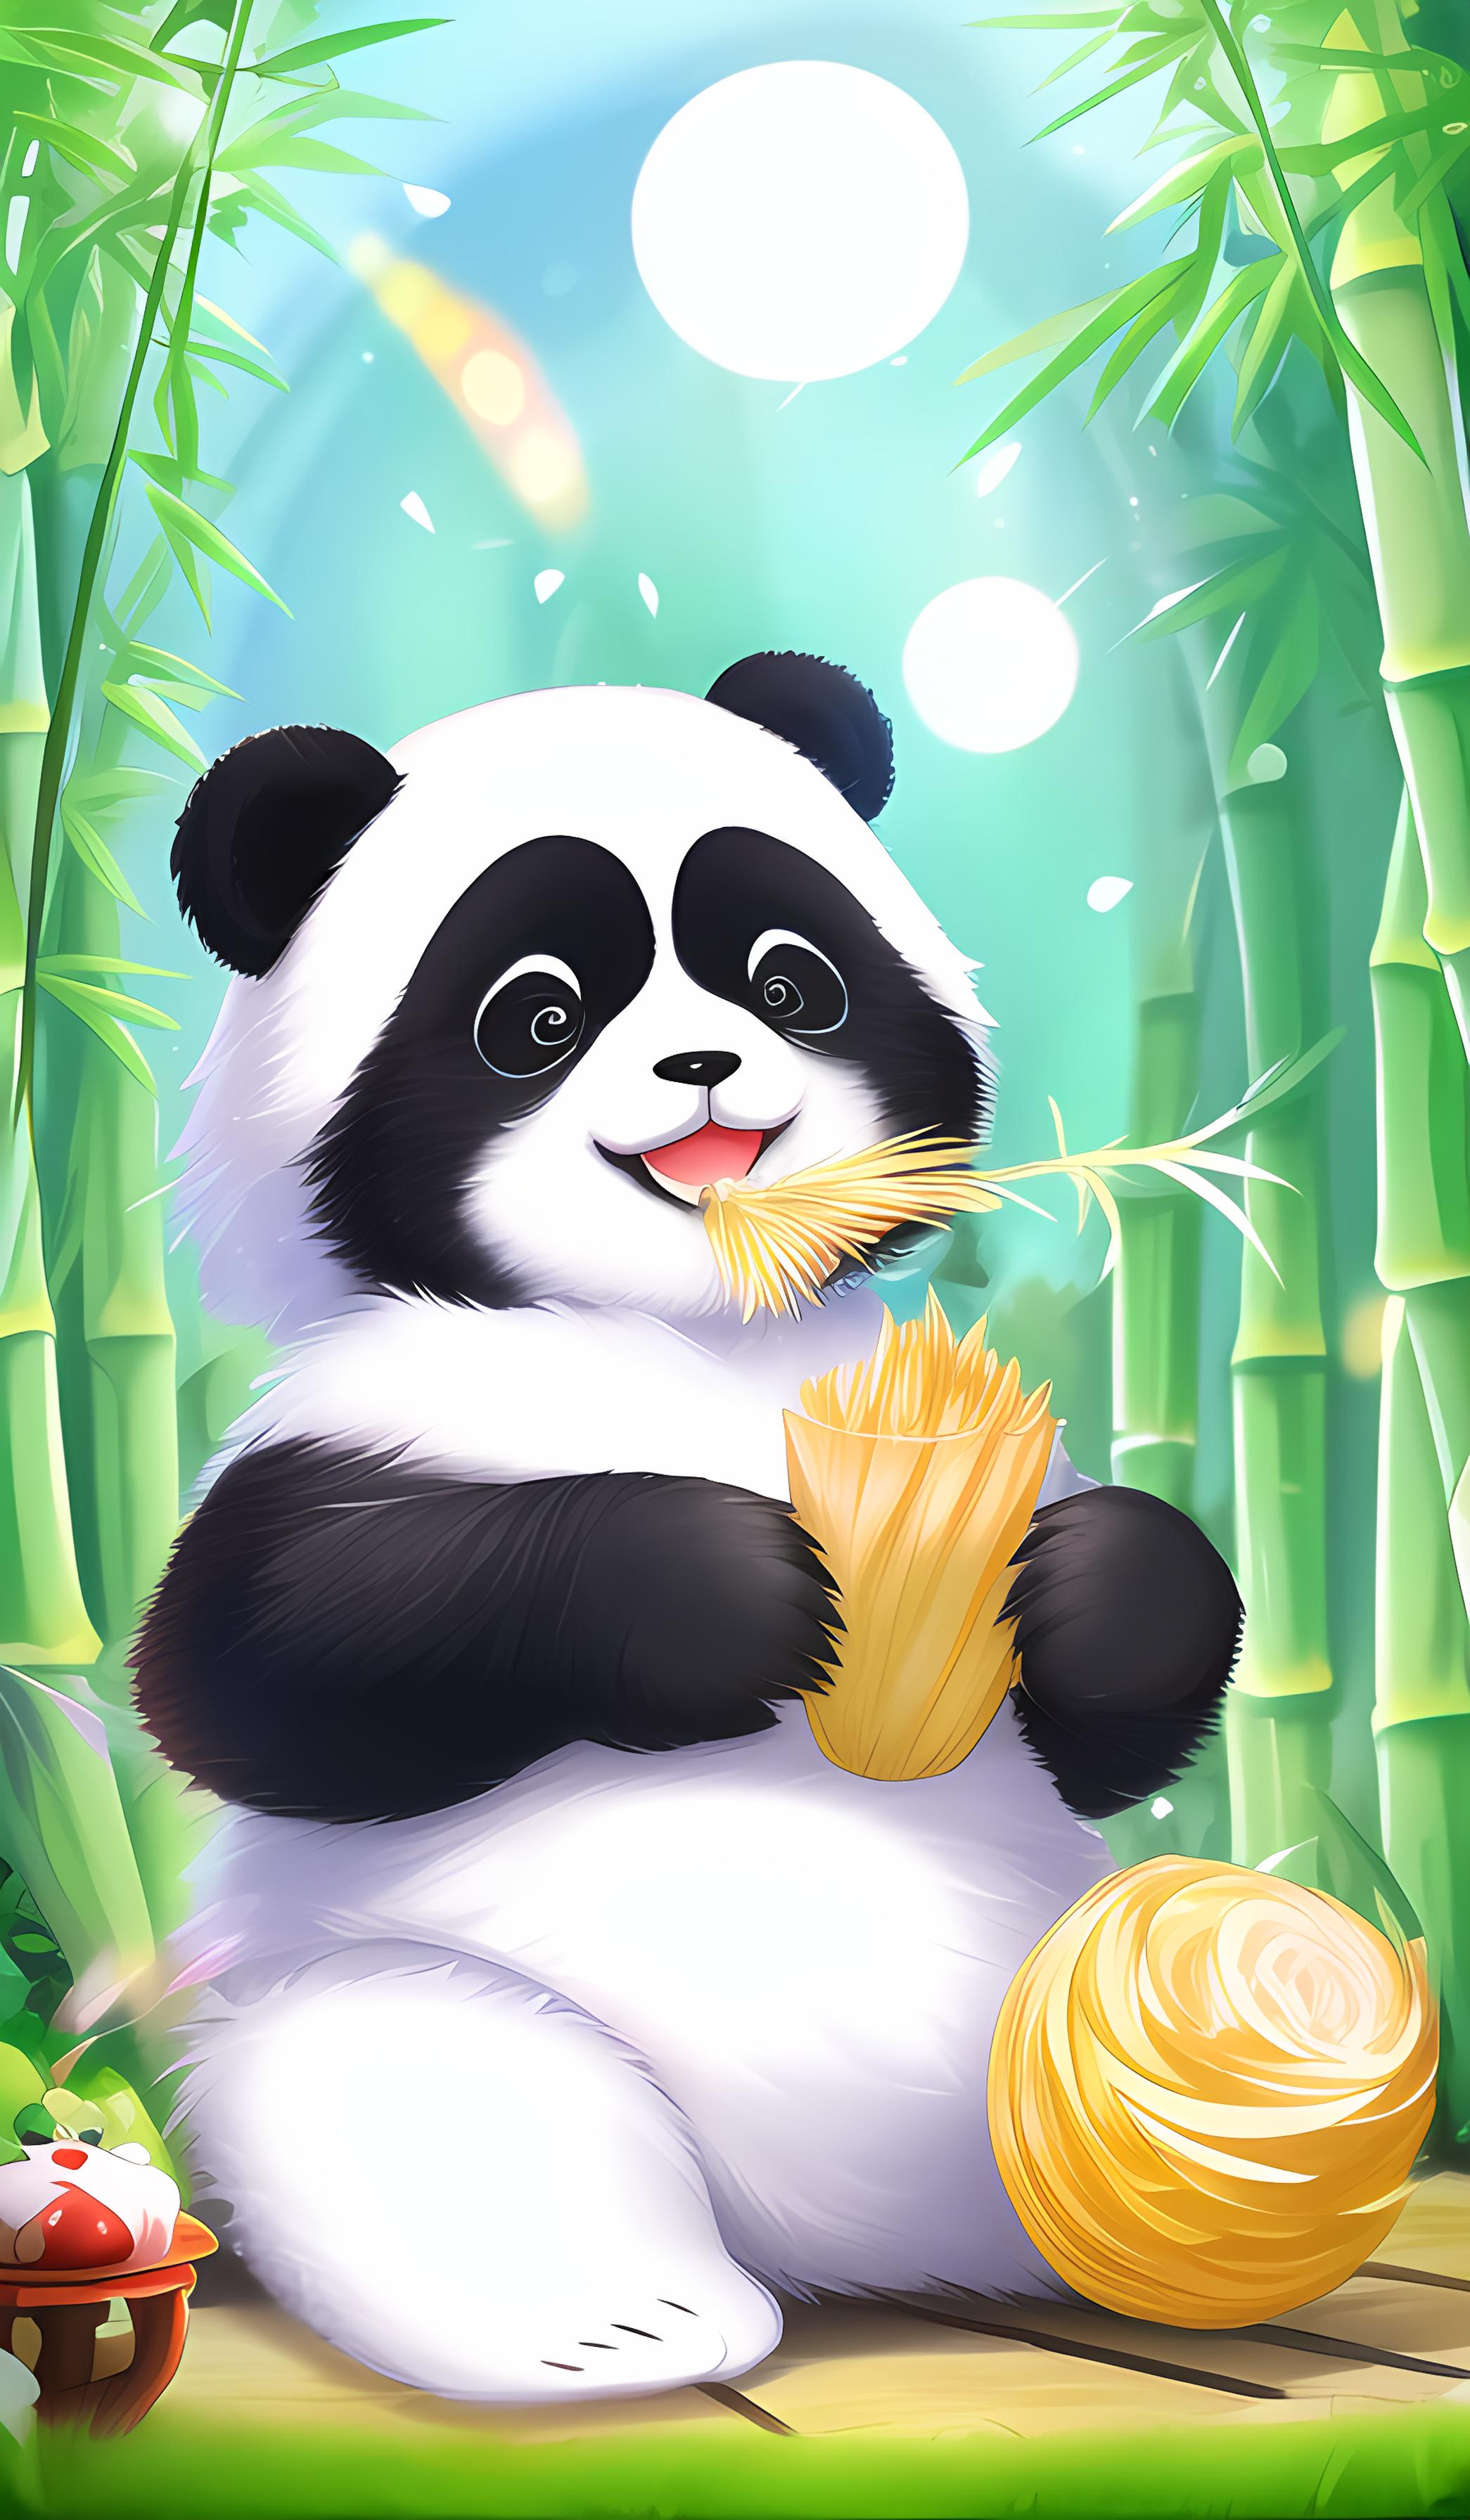 吃竹子的可爱熊猫